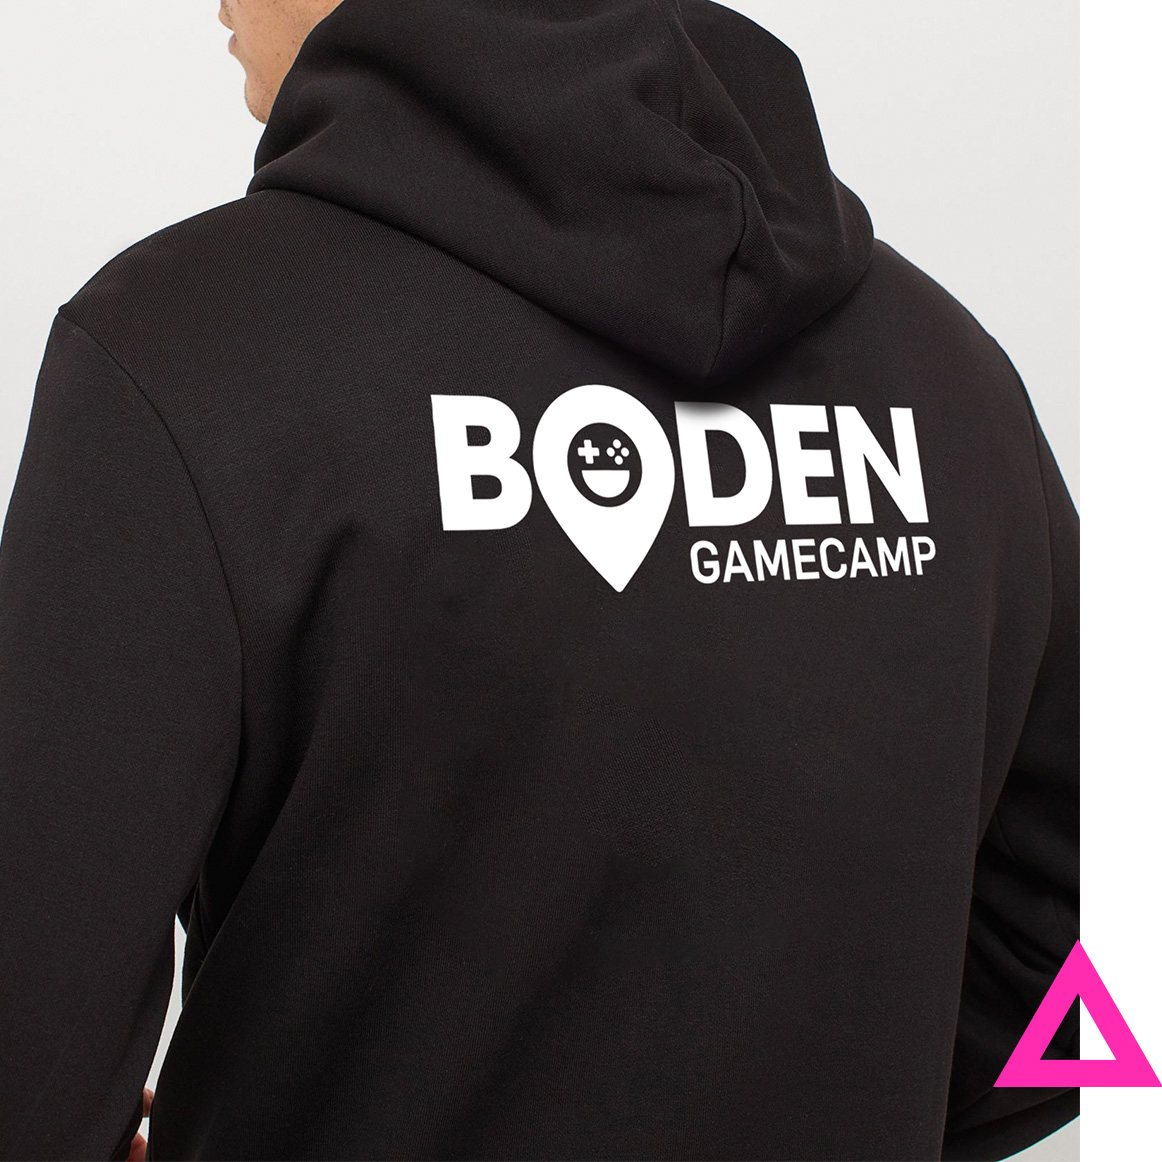 Boden game camp logo design